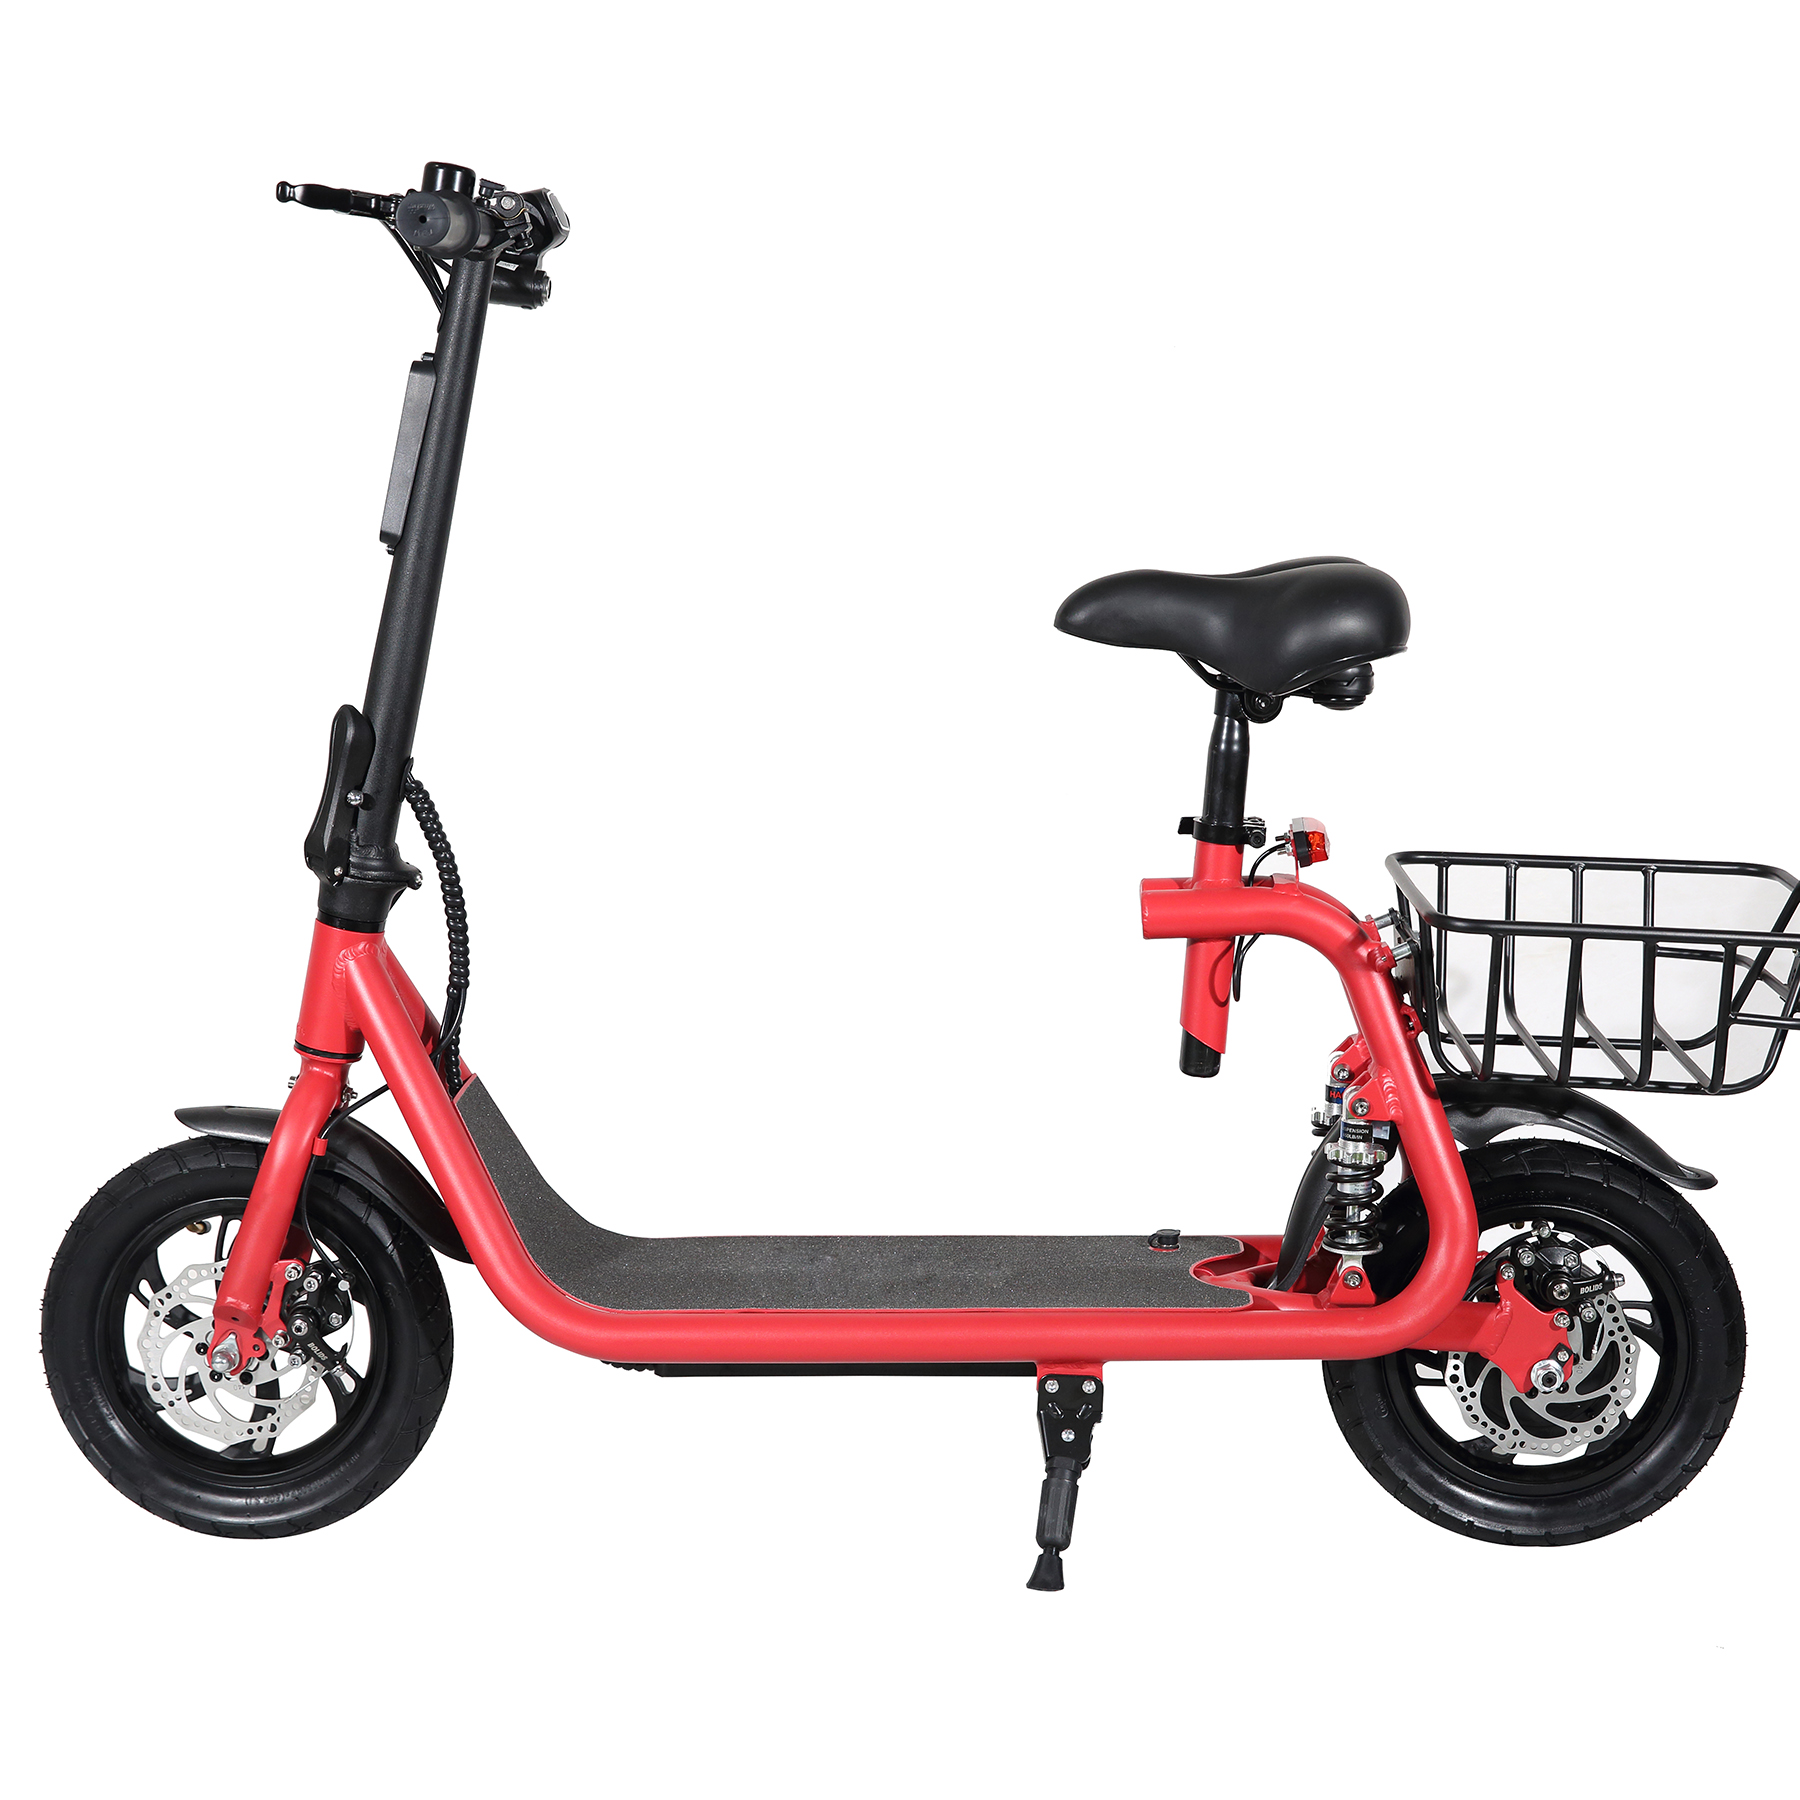 Scooter สกู๊ตเตอร์ไฟฟ้า จักรยานไฟฟ้า รุ่นใหม่มีโช๊คหลังคู่ 36v 350w  สินค้ามีหน้าร้าน+ศูนย์ซ่อม+อะไหล่